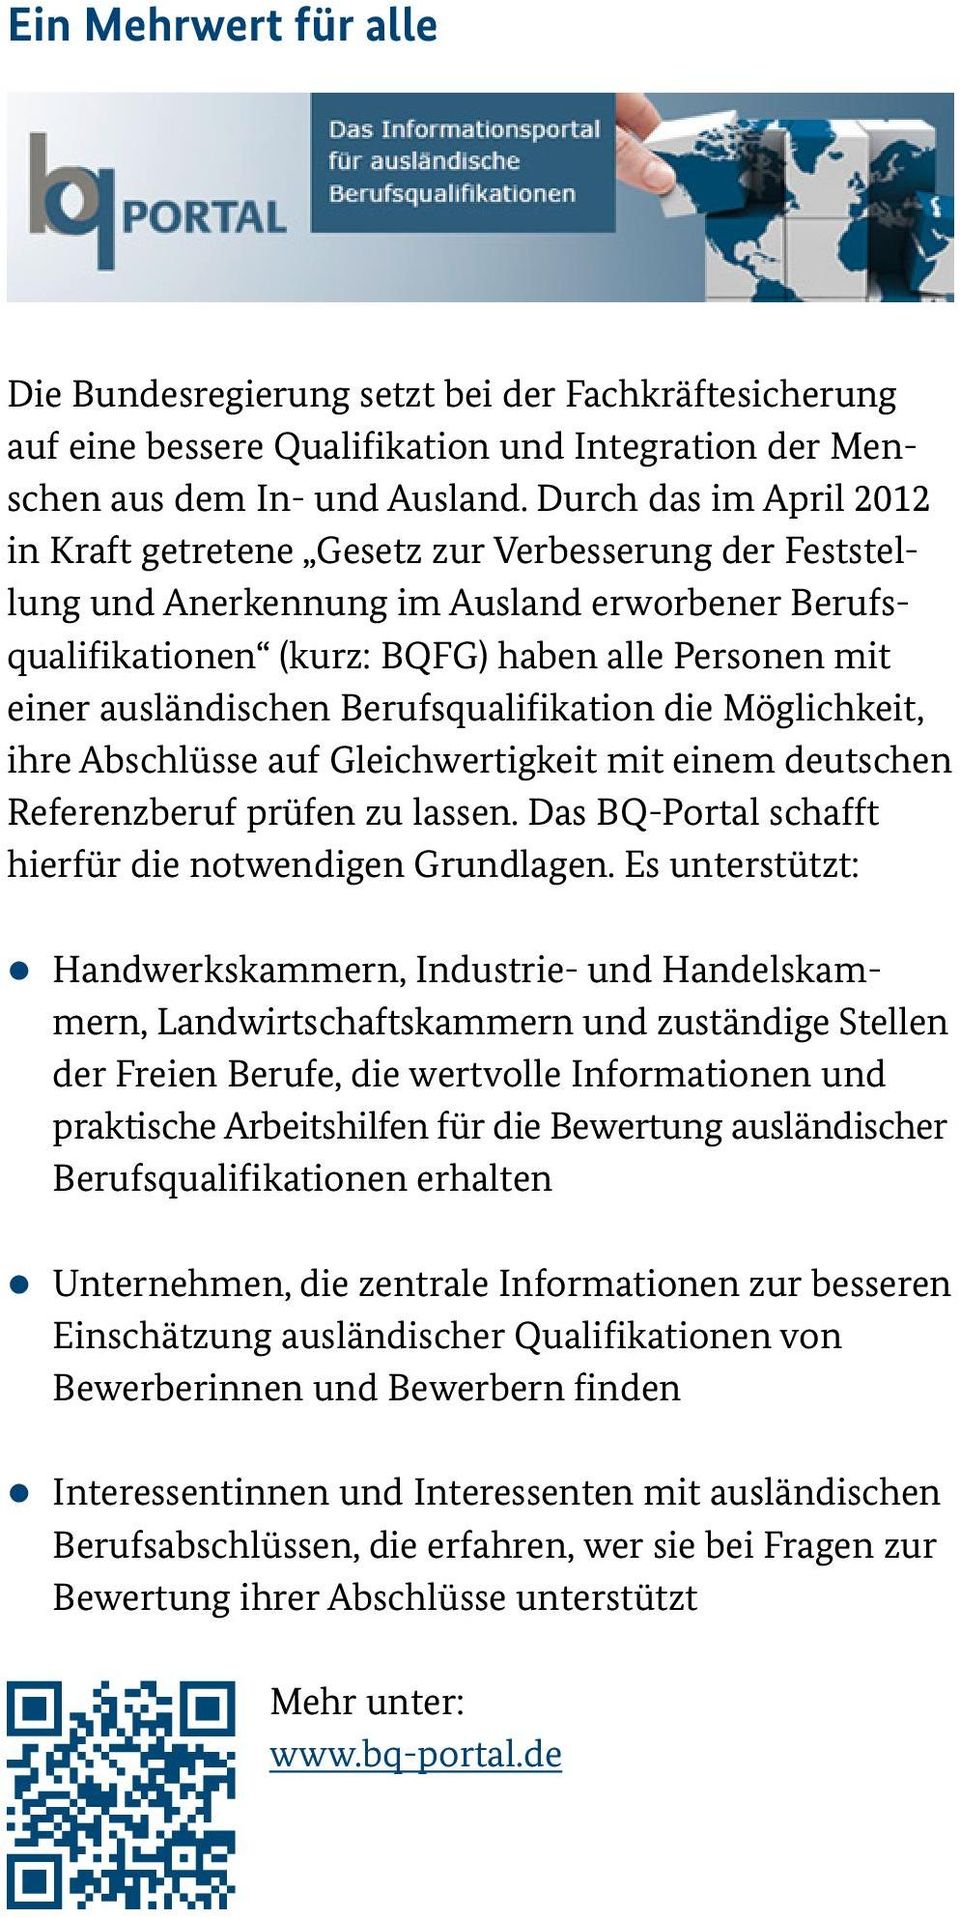 ausländischen Berufsqualifikation die Möglichkeit, ihre Abschlüsse auf Gleichwertigkeit mit einem deutschen Referenzberuf prüfen zu lassen. Das BQ-Portal schafft hierfür die notwendigen Grundlagen.